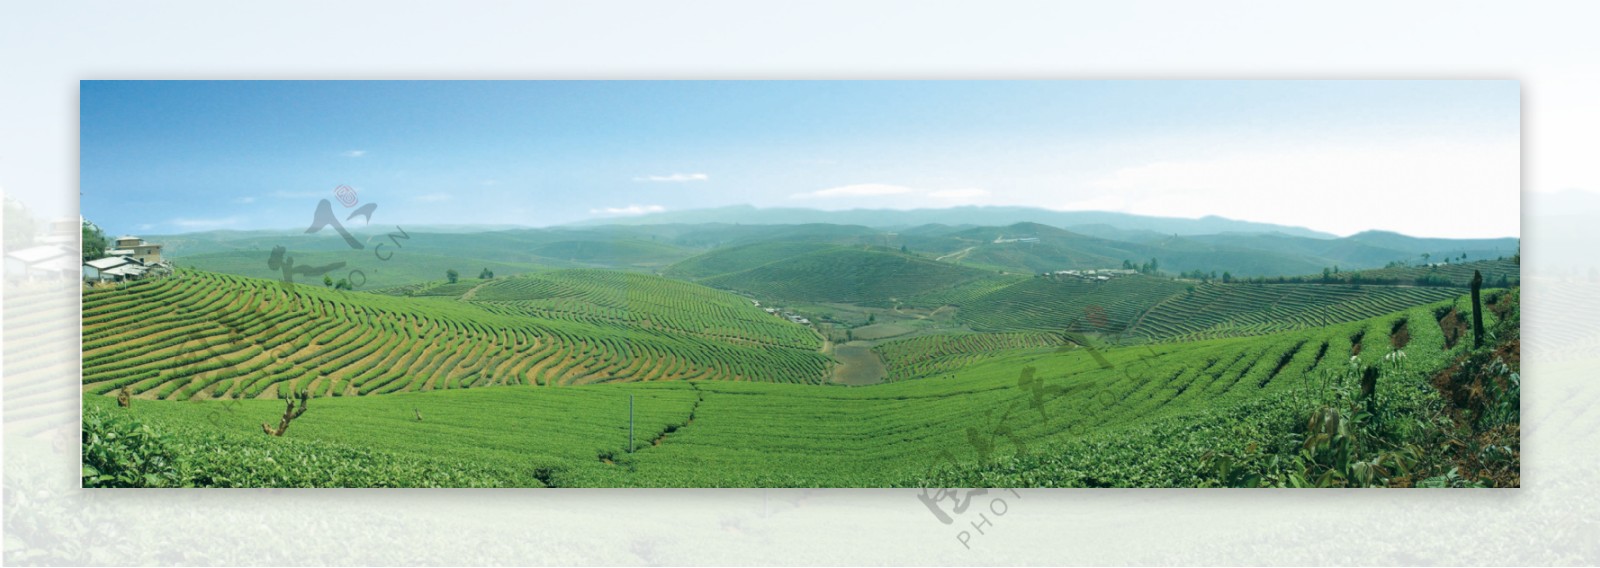 普洱茶乡大度岗万亩茶园2004年摄图片